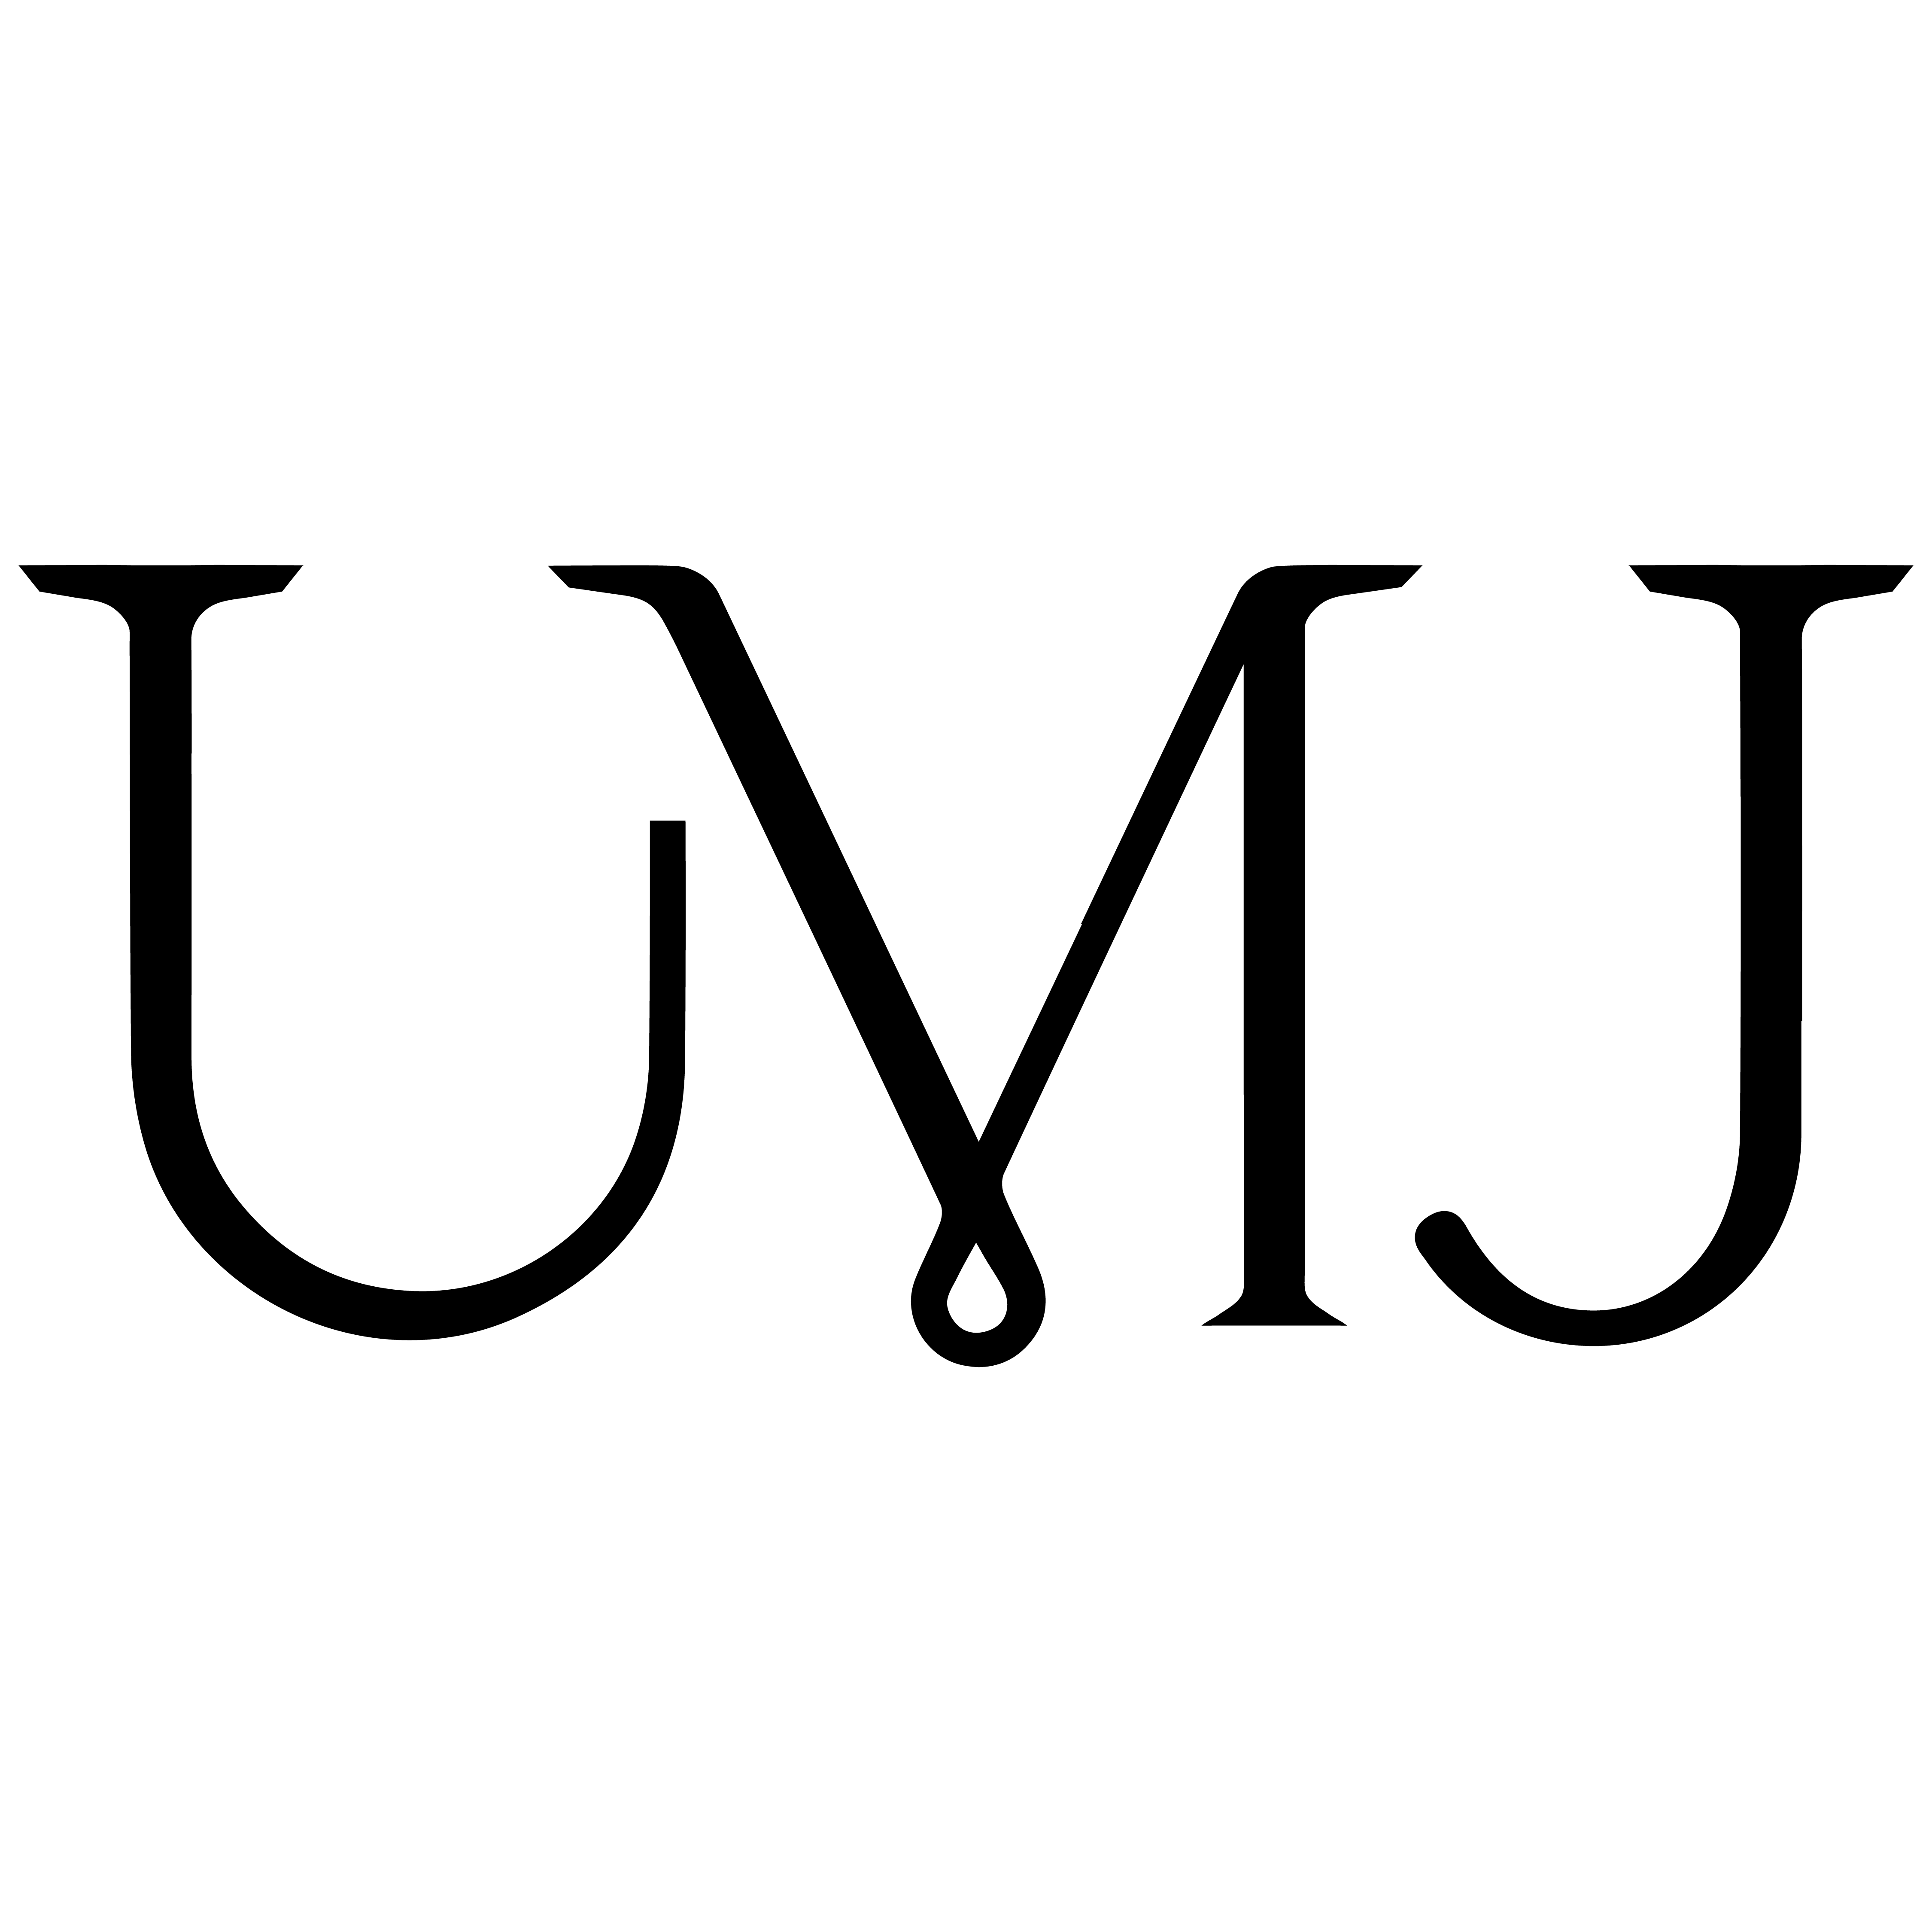 UMJ logo